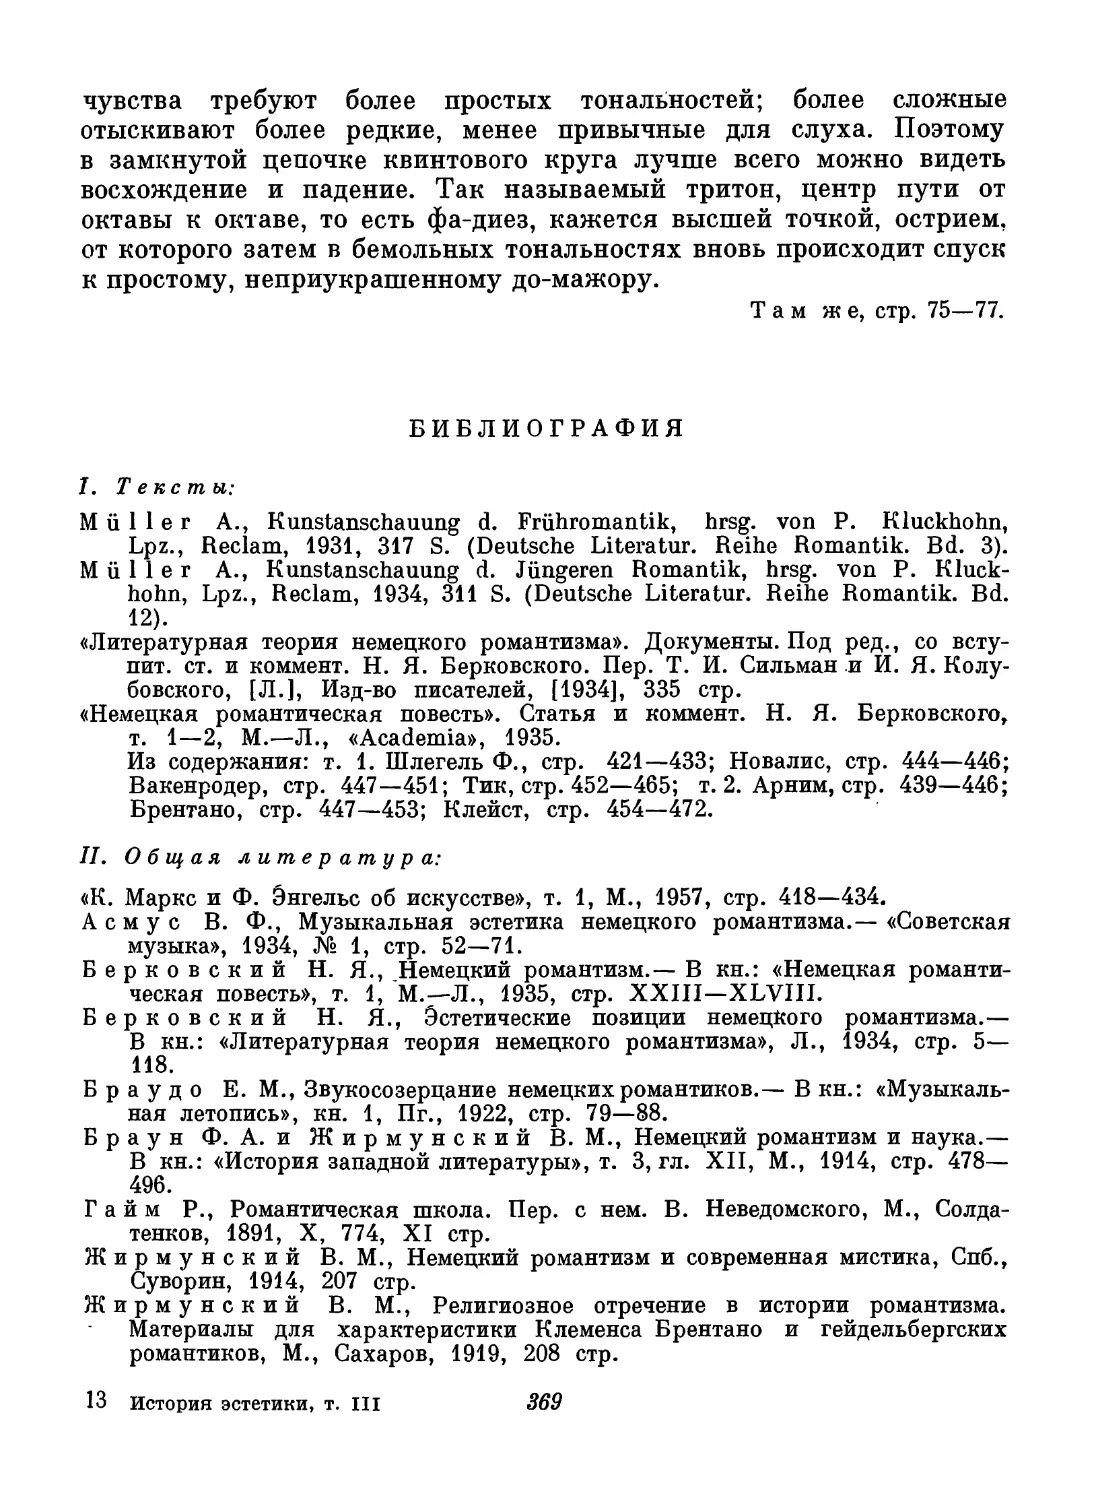 Библиография. Составители В. П. Шестаков и Ал. В. Михайлов